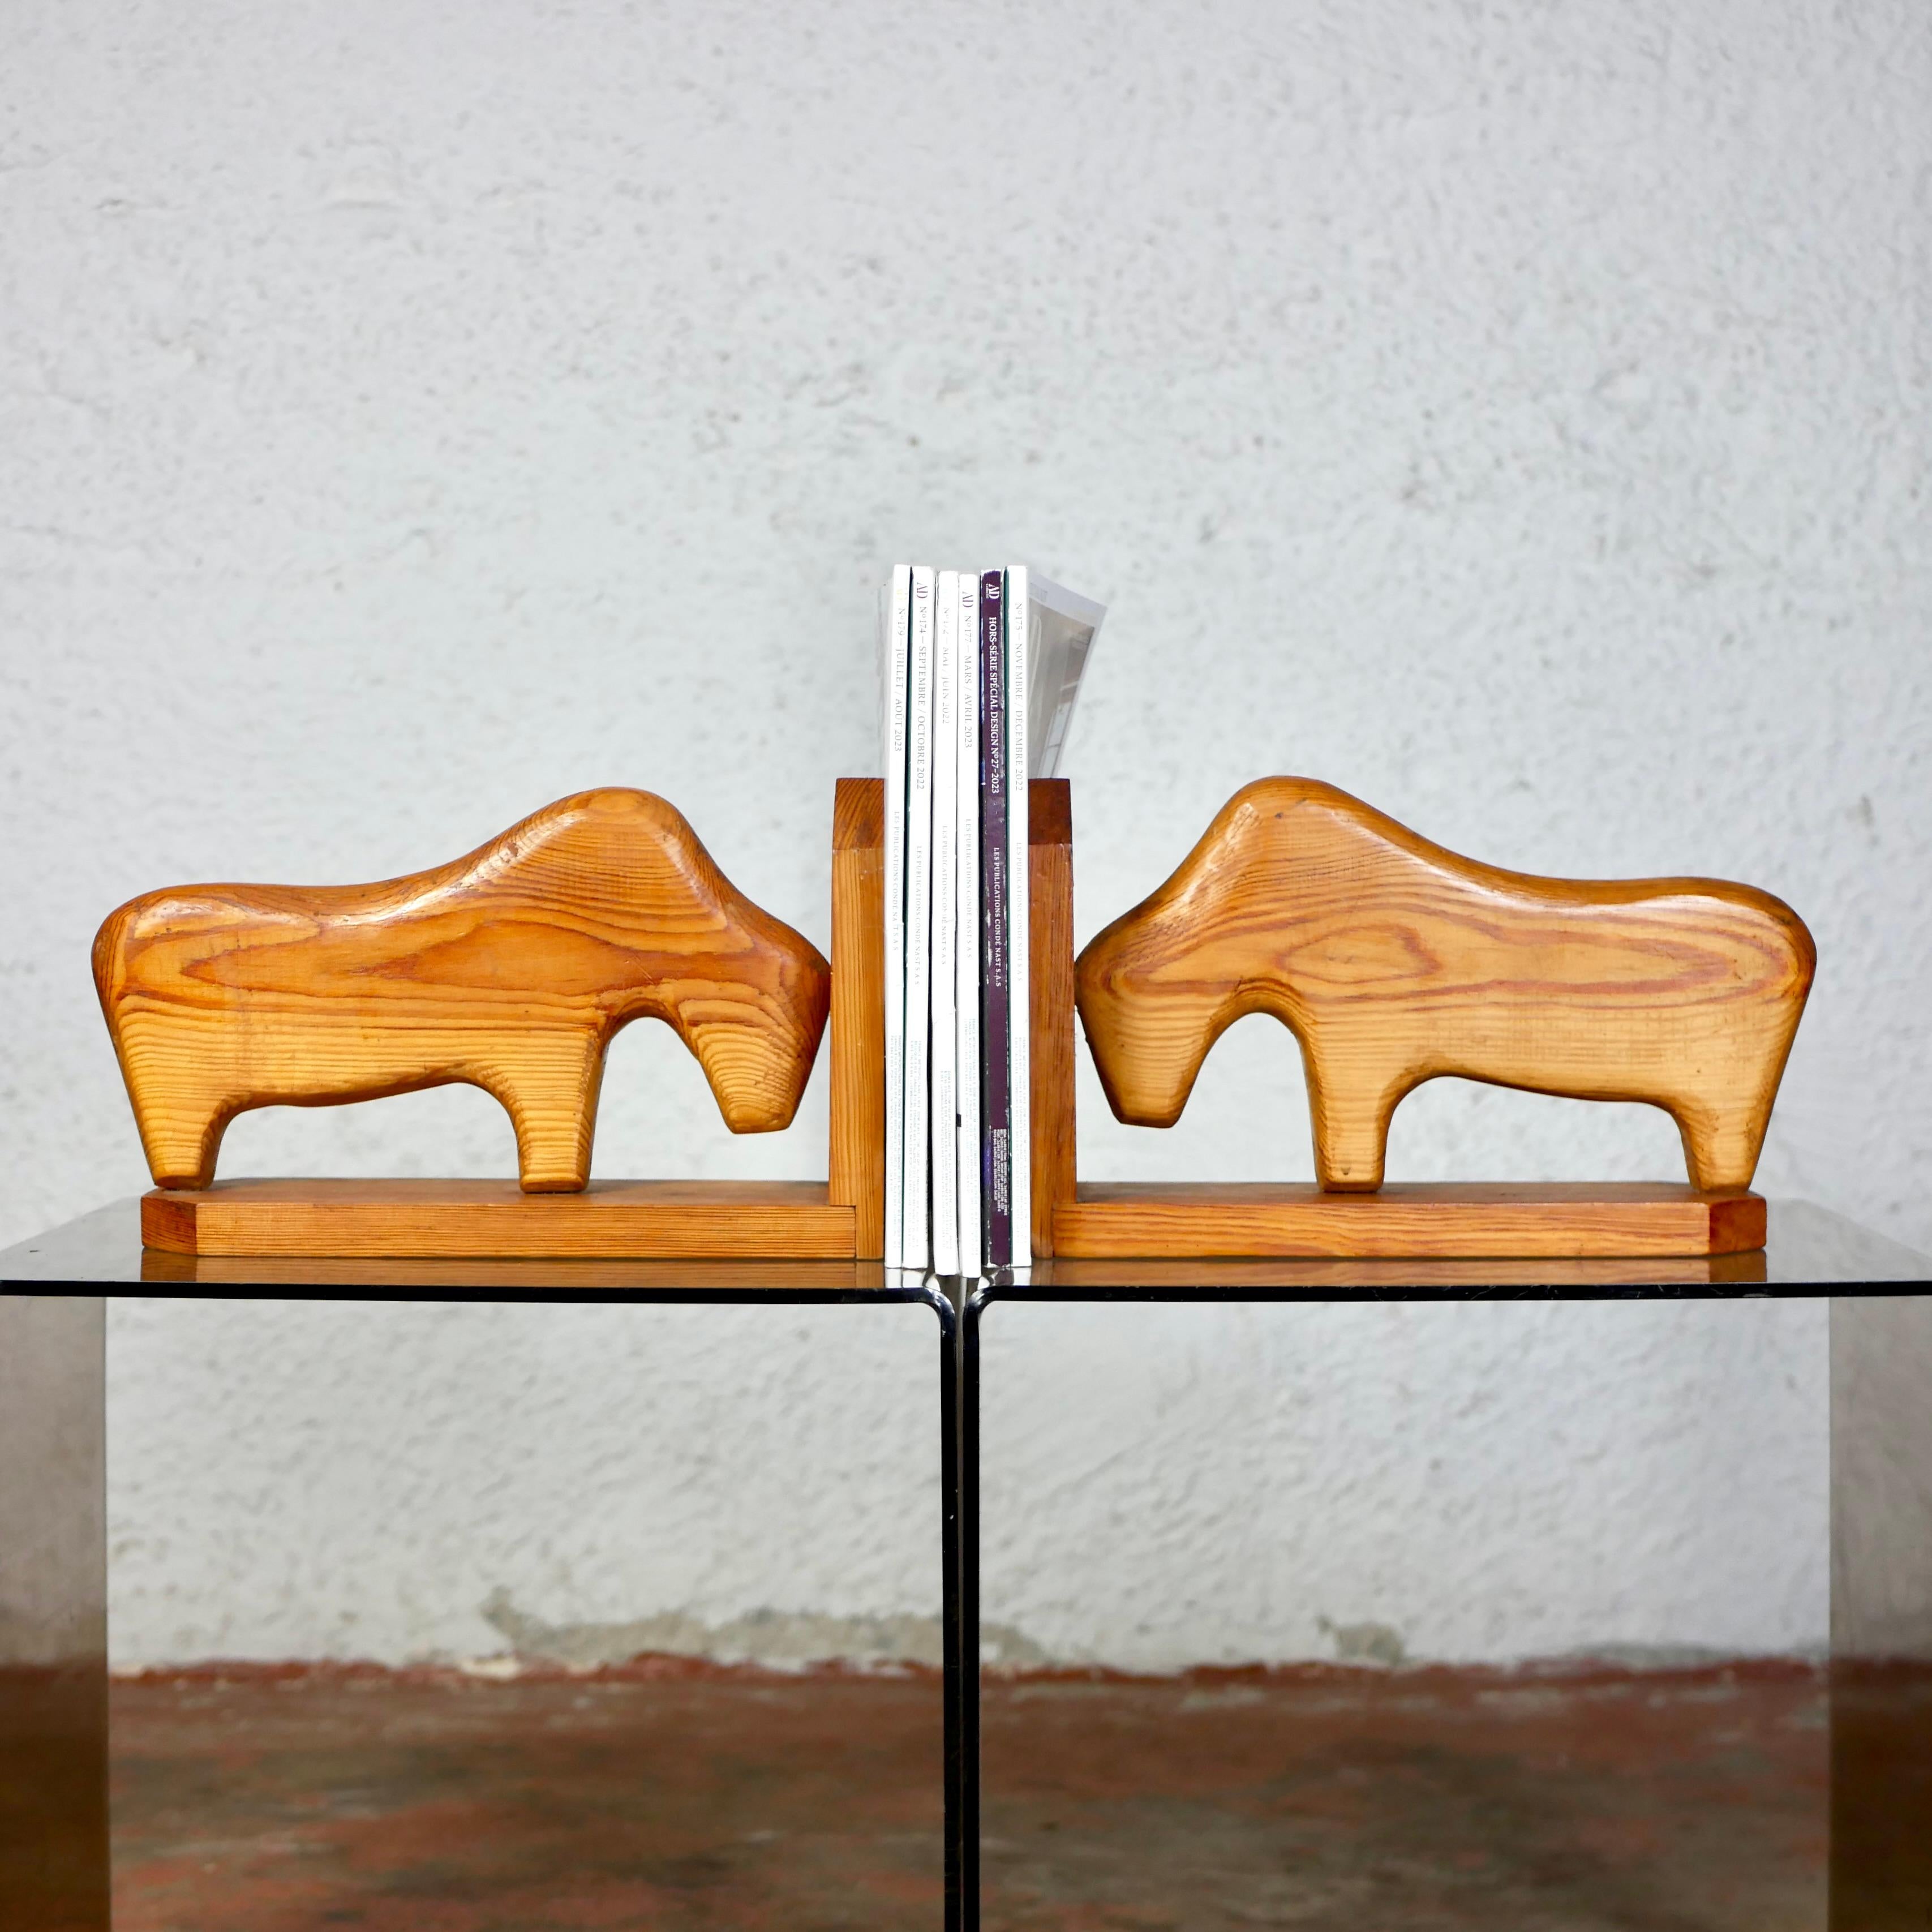 Jolis serre-livres en bois de pin fabriqués à la main dans les années 1980, en provenance des Pays-Bas, représentant deux yaks dans un style brutaliste, presque naïf.
Bon état général.
Sculptée et signée 